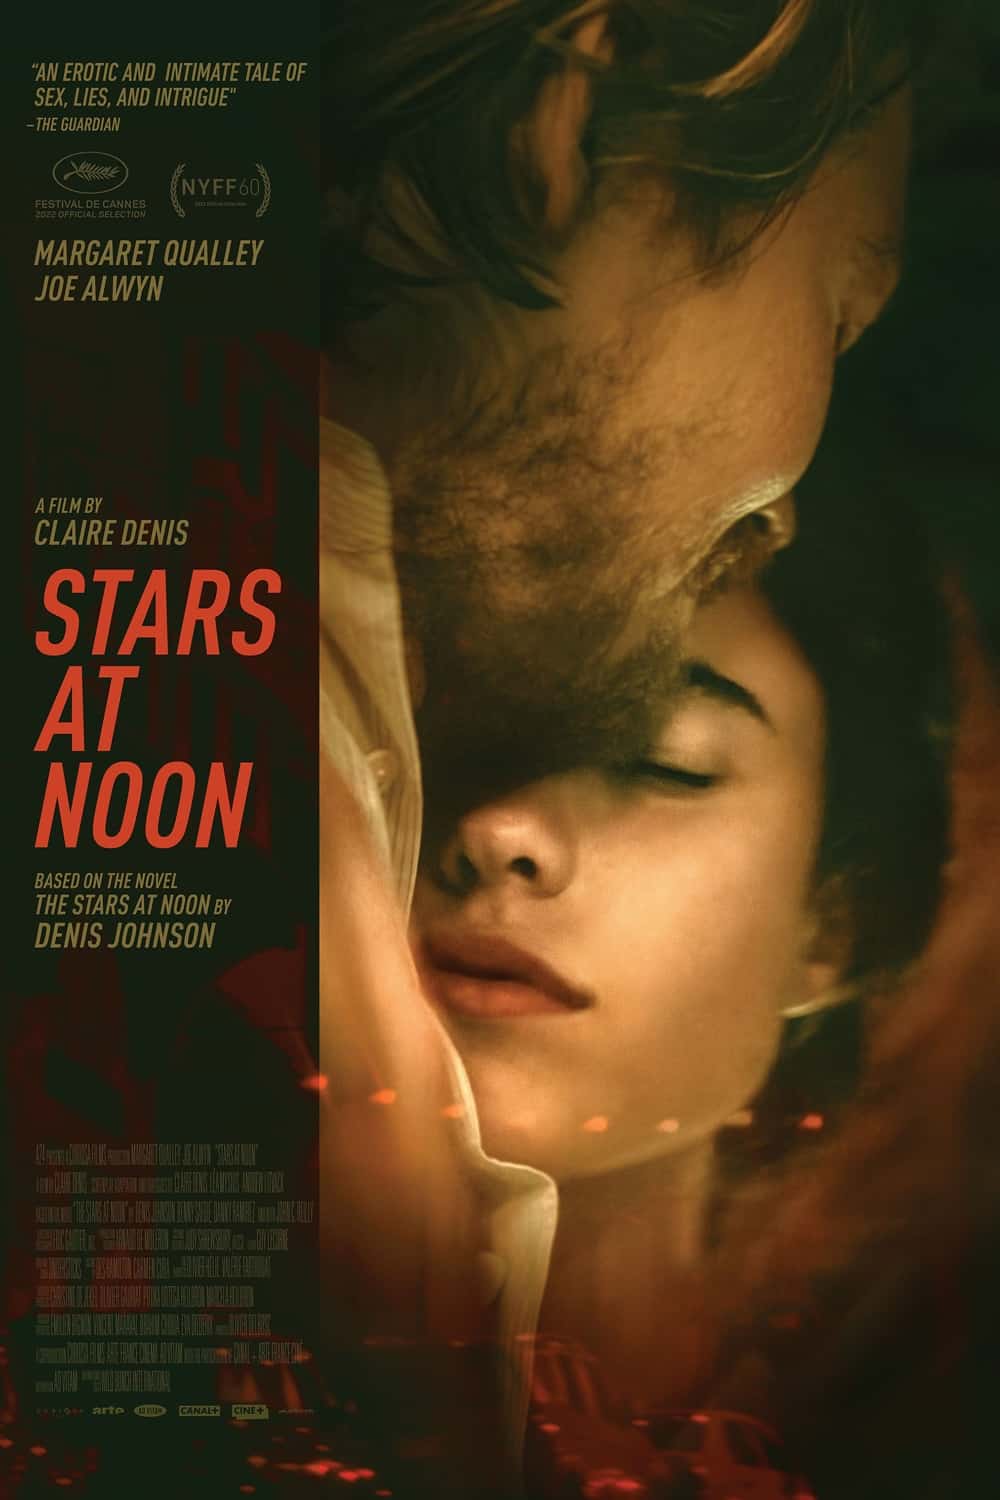 Stars at noon review